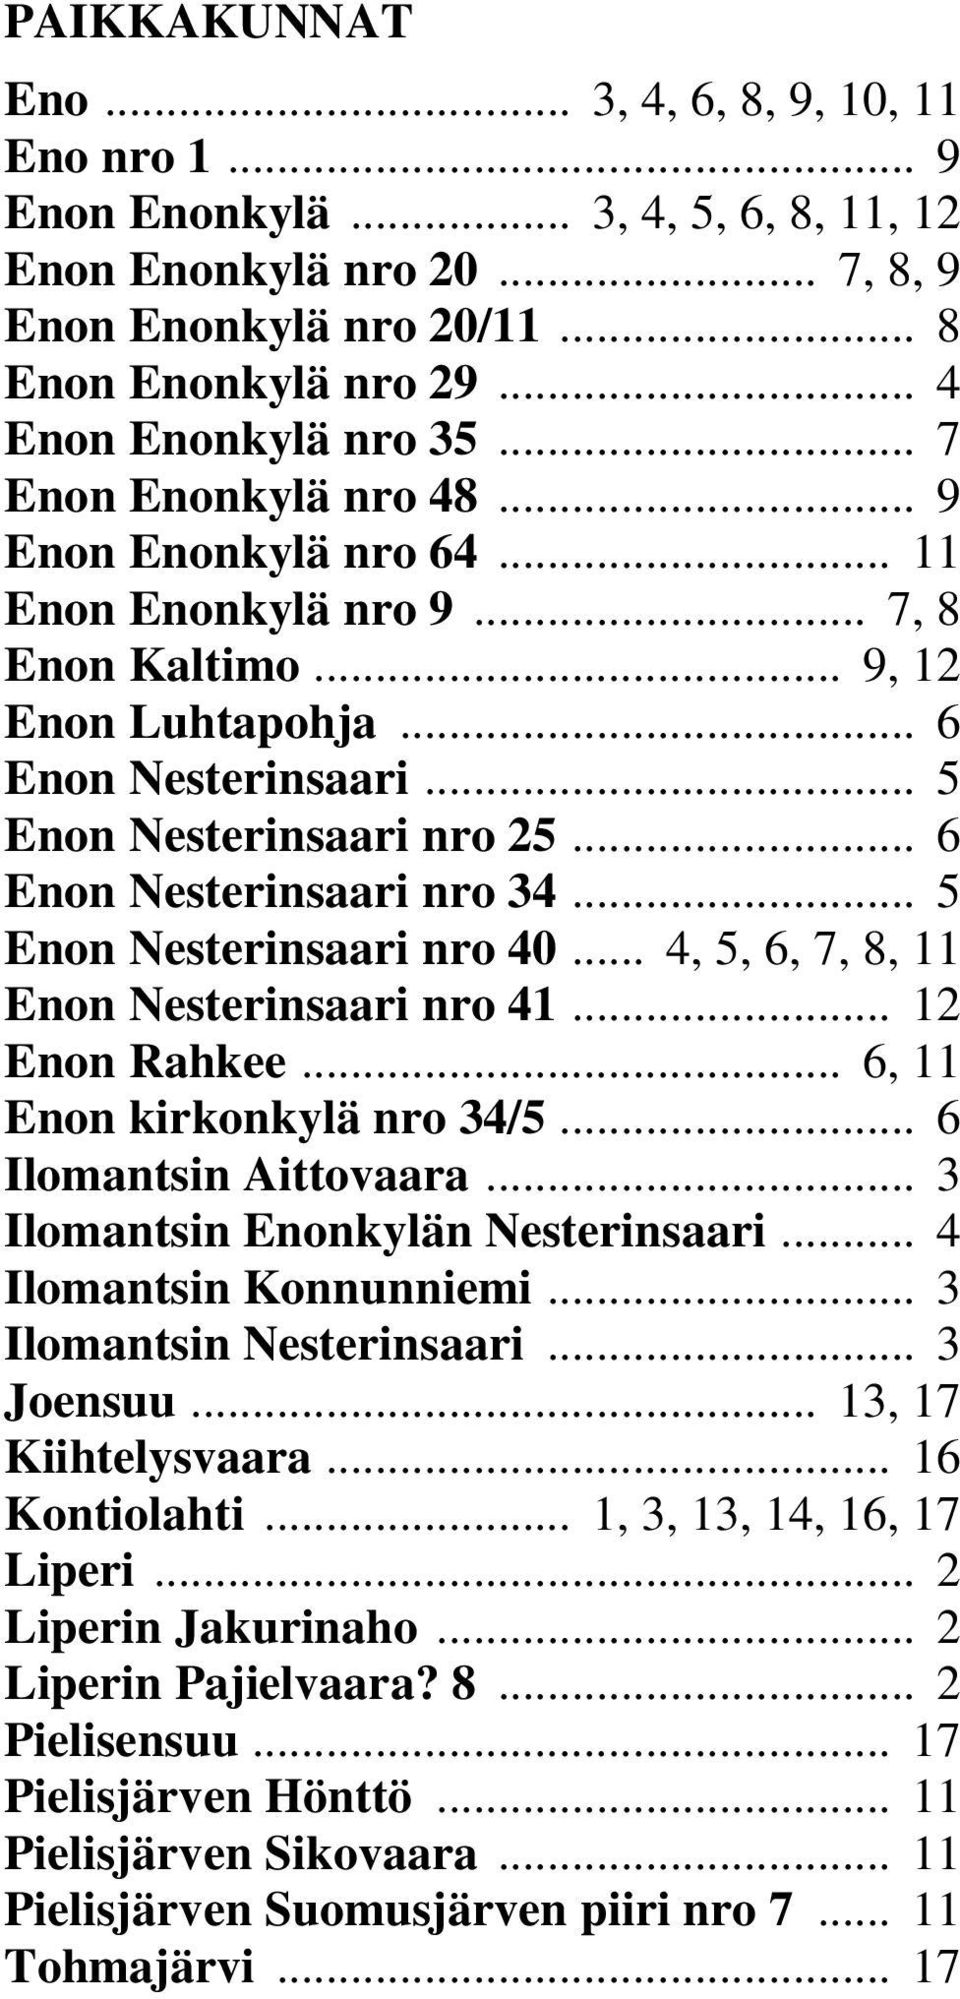 .. 5 Enon Nesterinsaari nro 25... 6 Enon Nesterinsaari nro 34... 5 Enon Nesterinsaari nro 40... 4, 5, 6, 7, 8, 11 Enon Nesterinsaari nro 41... 12 Enon Rahkee... 6, 11 Enon kirkonkylä nro 34/5.